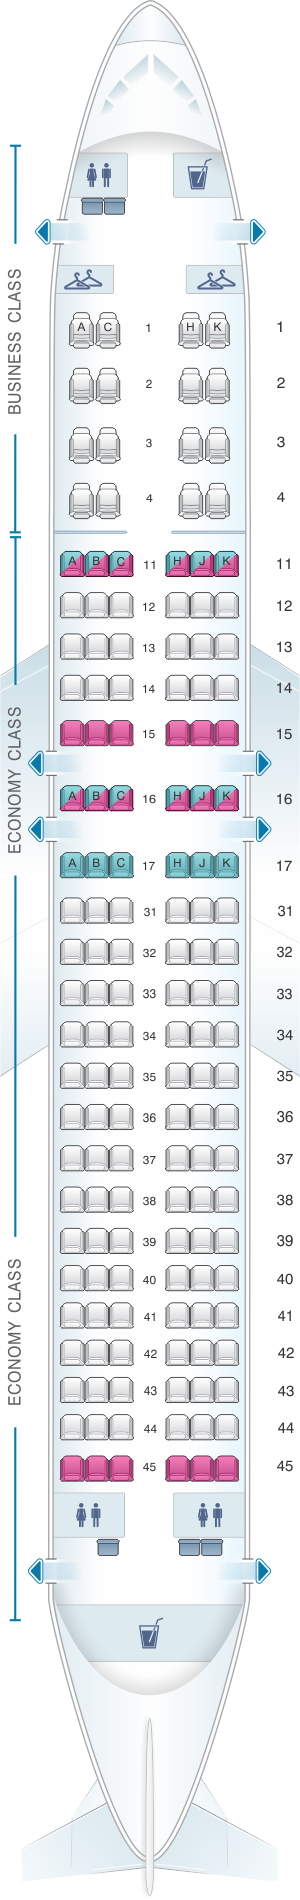 Seat Map Air Astana Airbus A320 232 Seatmaestro